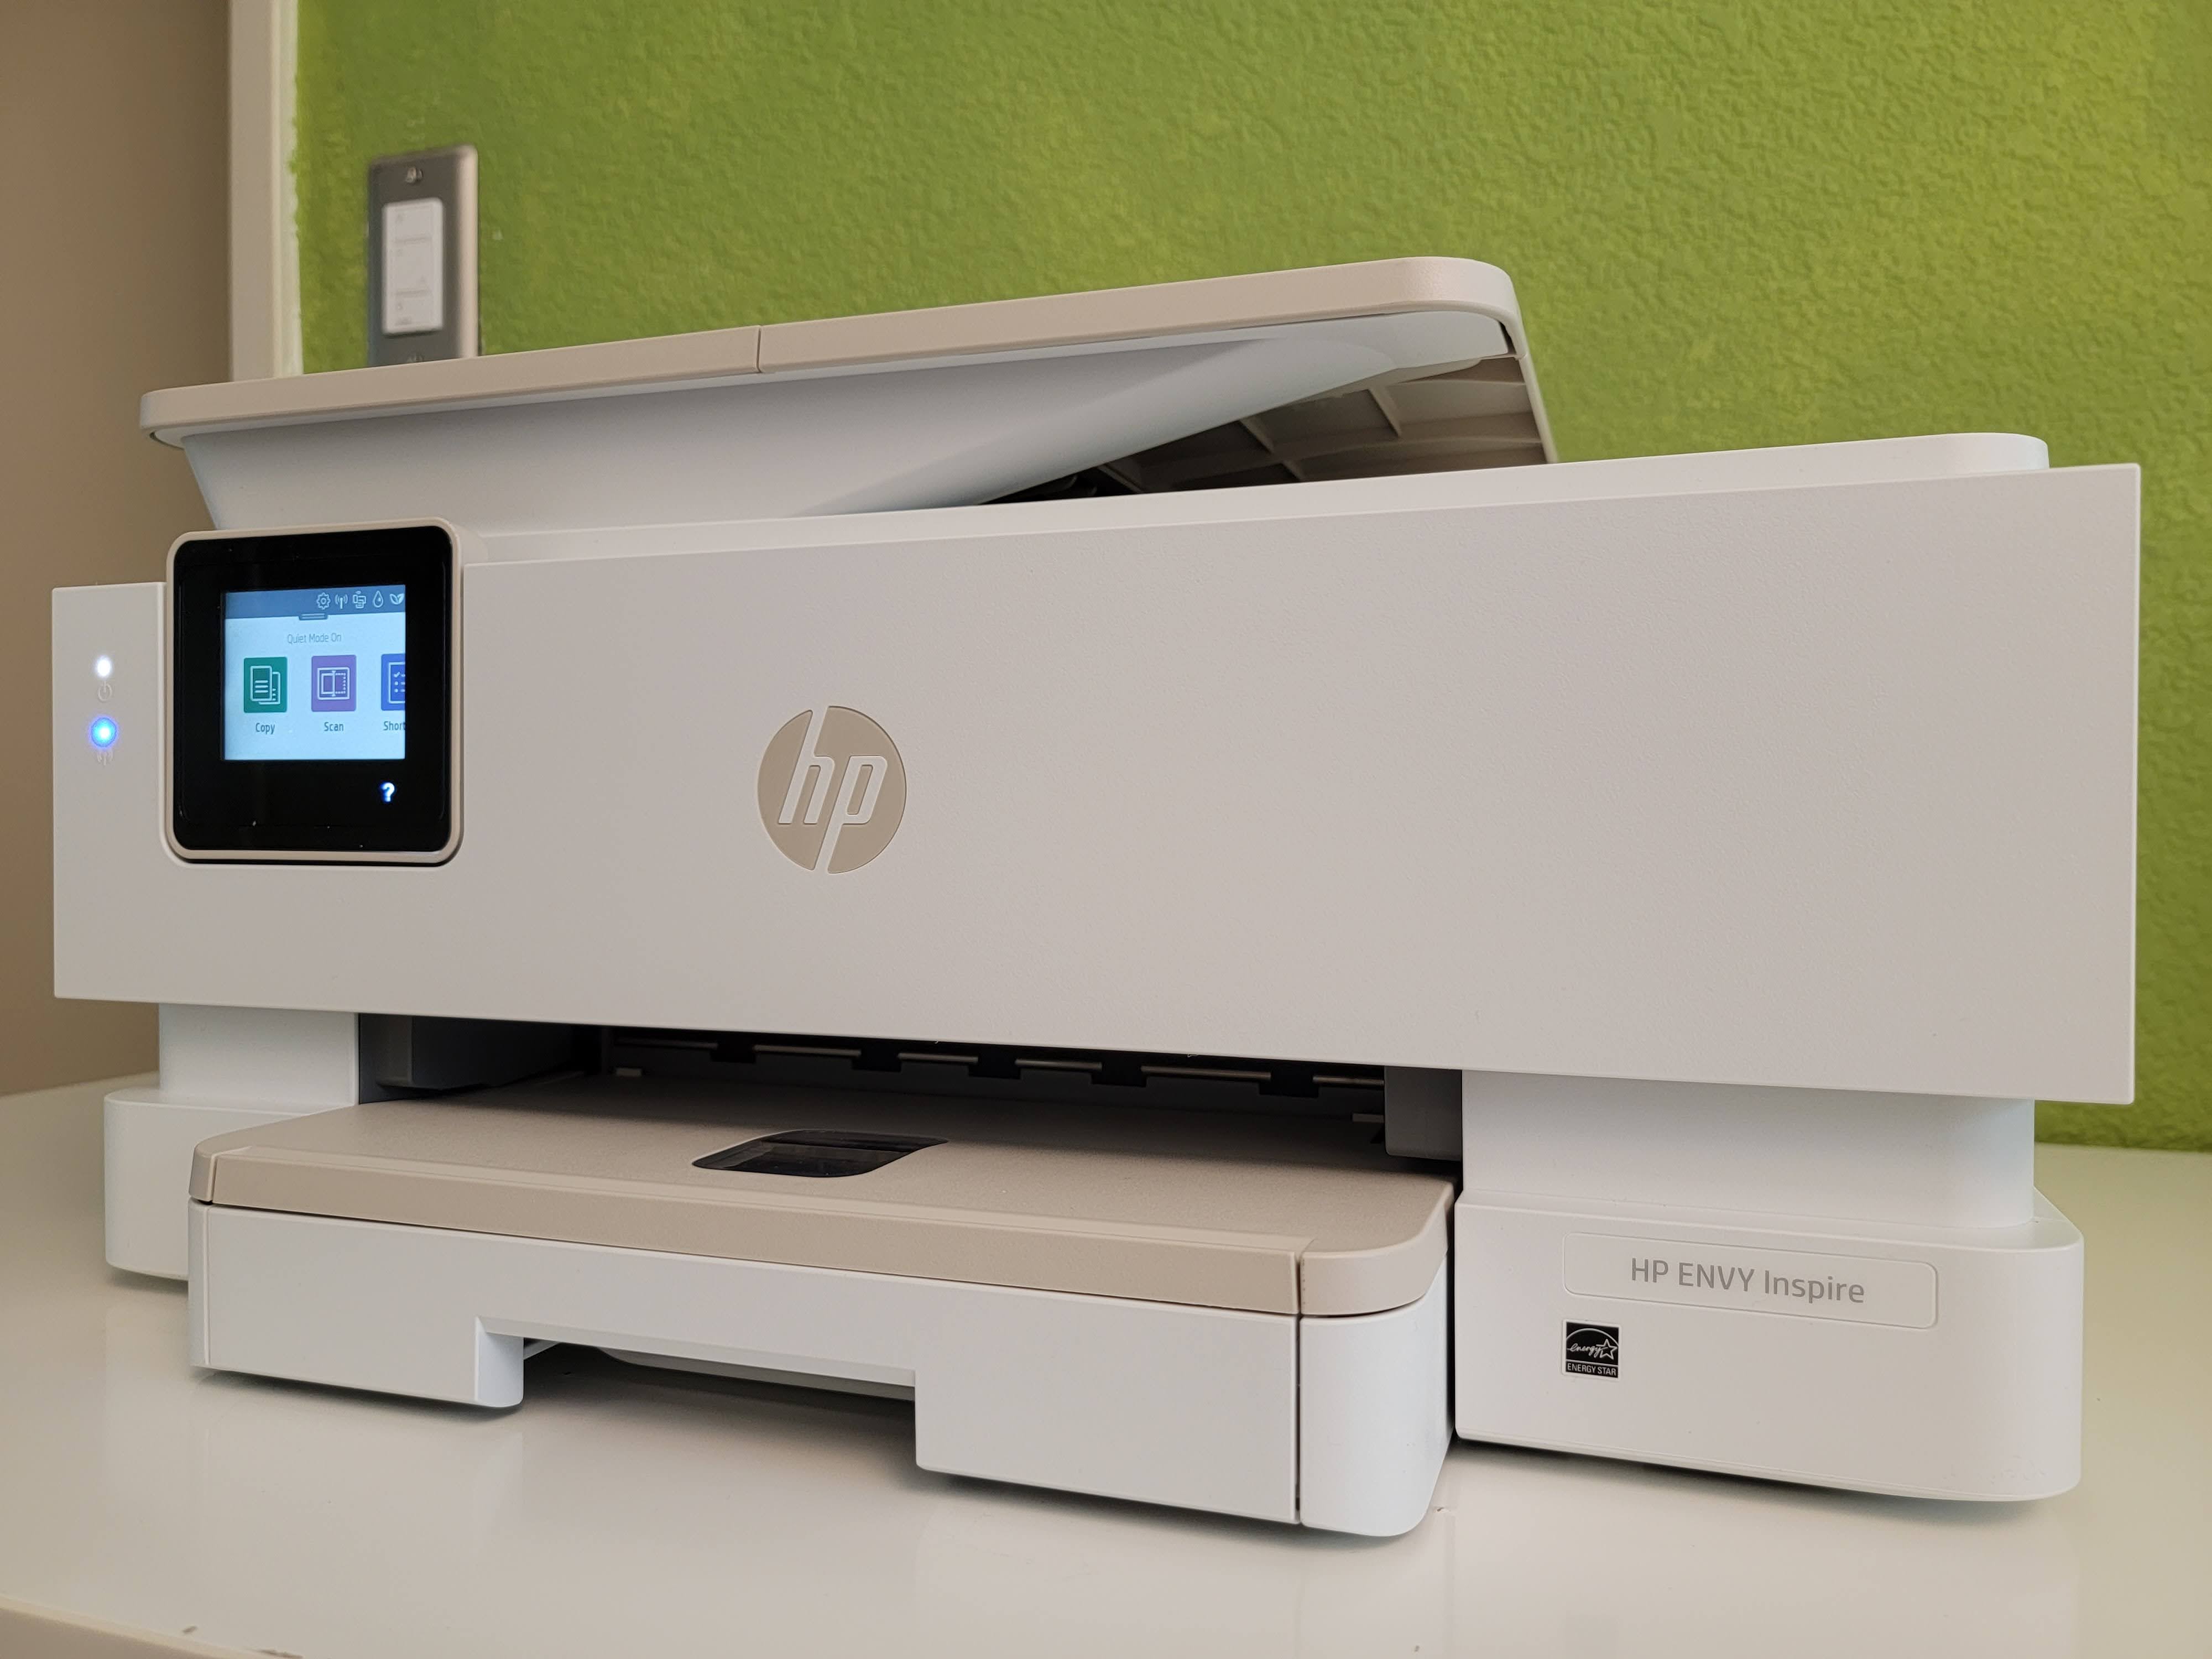 HP Envy 7900e Review: A Versatile Printer | Digital